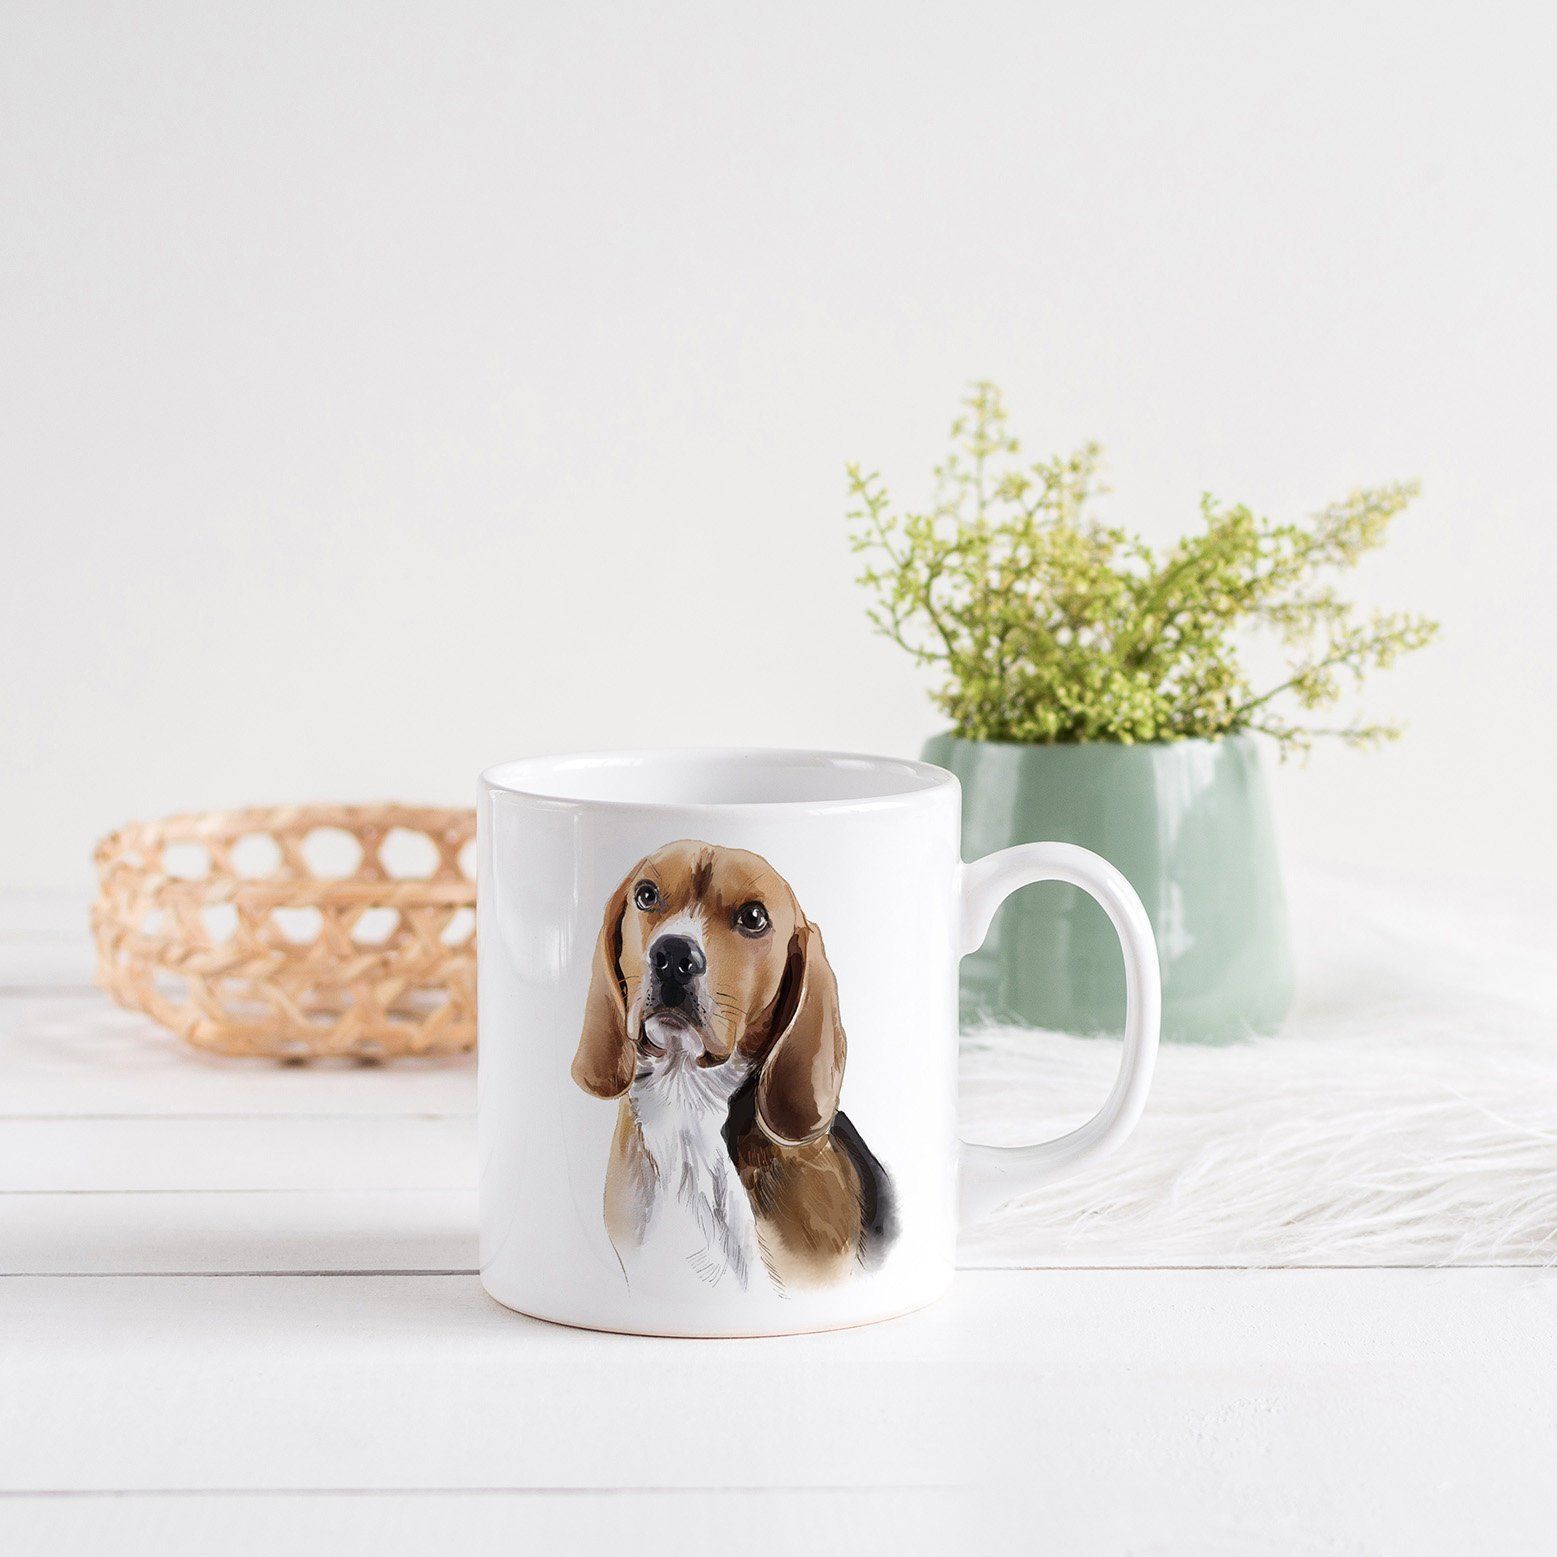 Beagle Mug, Birthday Gift For Dog Lovers, Animal Lover Gift, Pet Mug